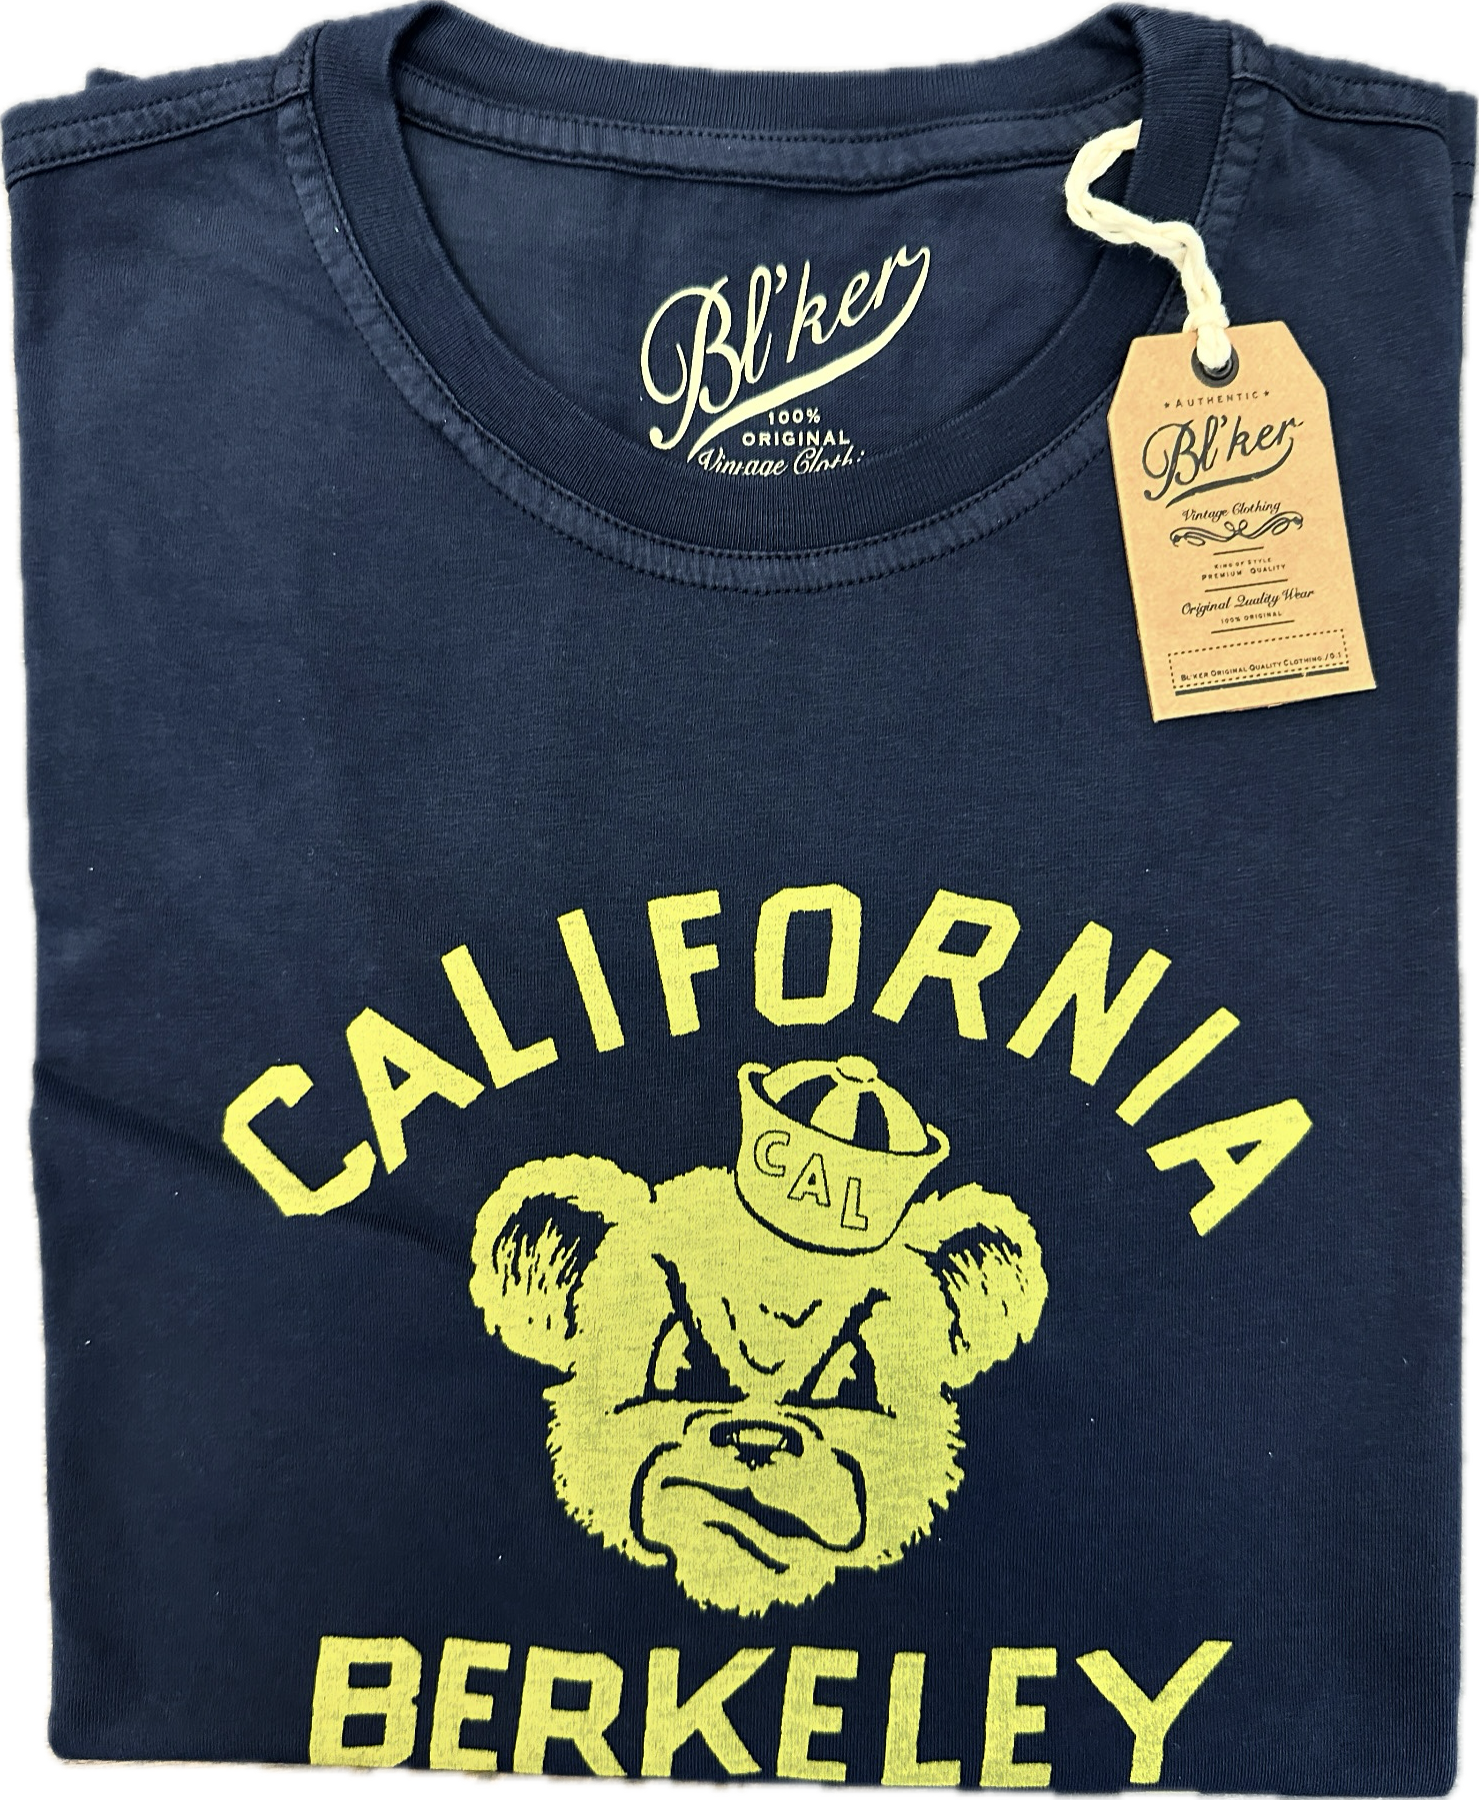 T-shirt cotone "California Berkeley" BL'KER